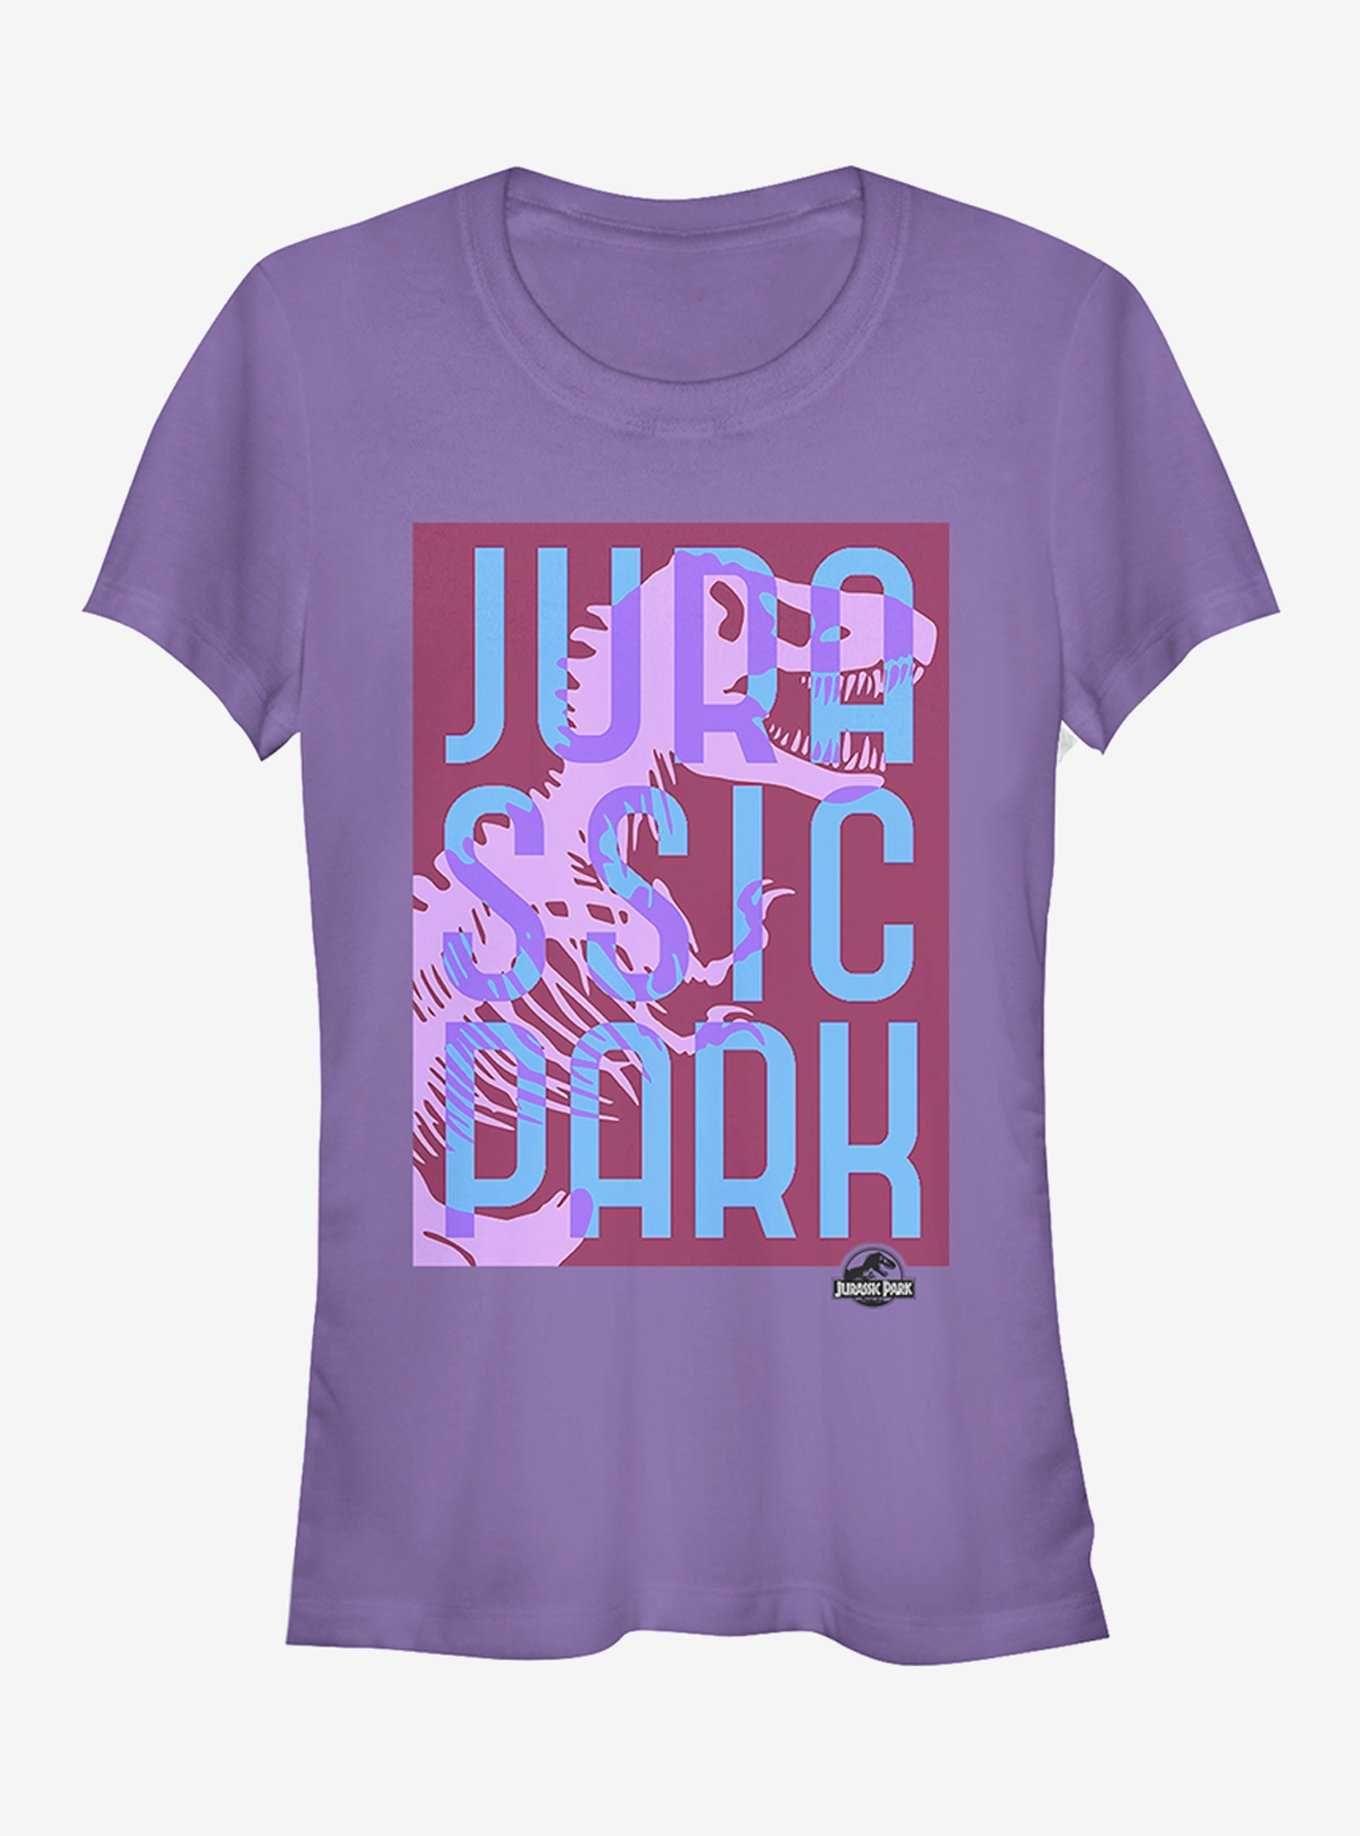 Jurassic Park T. Rex Overlap Text Girls T-Shirt, , hi-res